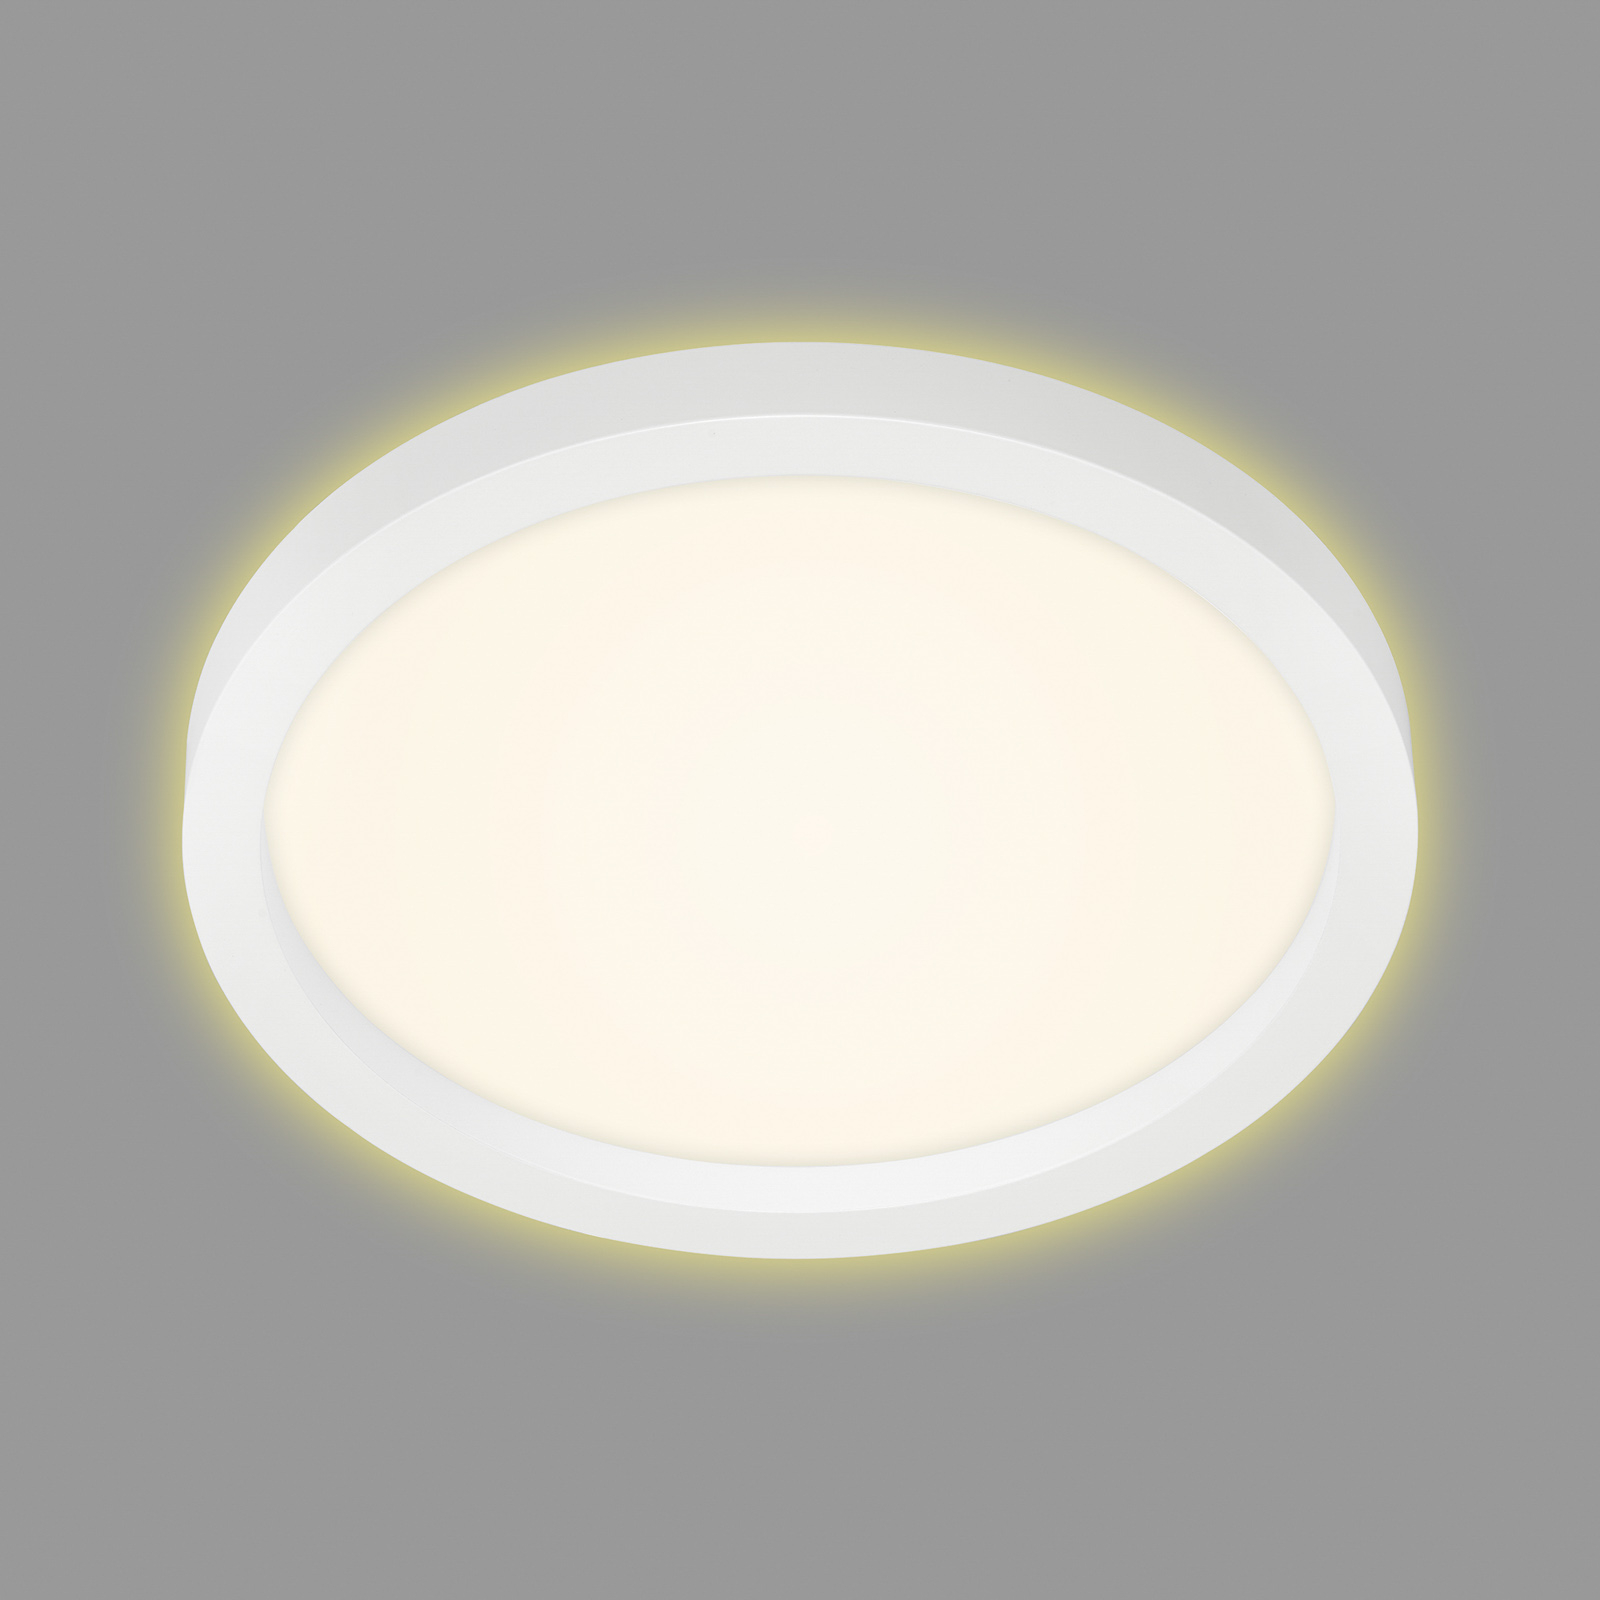 7361 LED ceiling lamp, Ø 29 cm, white